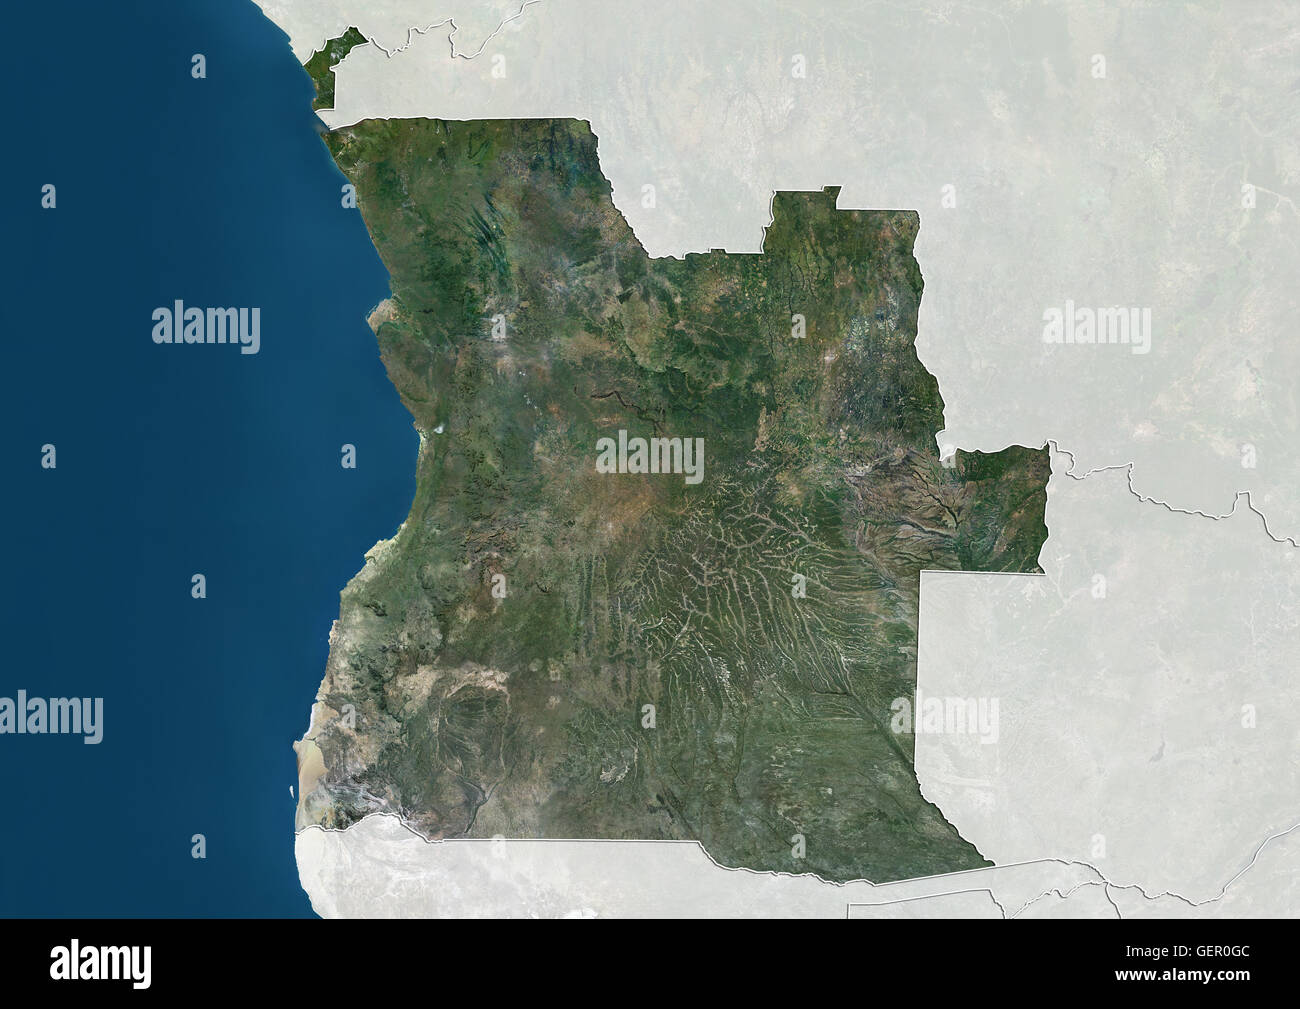 Satellitenansicht von Angola (mit Ländergrenzen). Dieses Bild wurde aus Daten von Landsat-Satelliten erworben erstellt. Stockfoto